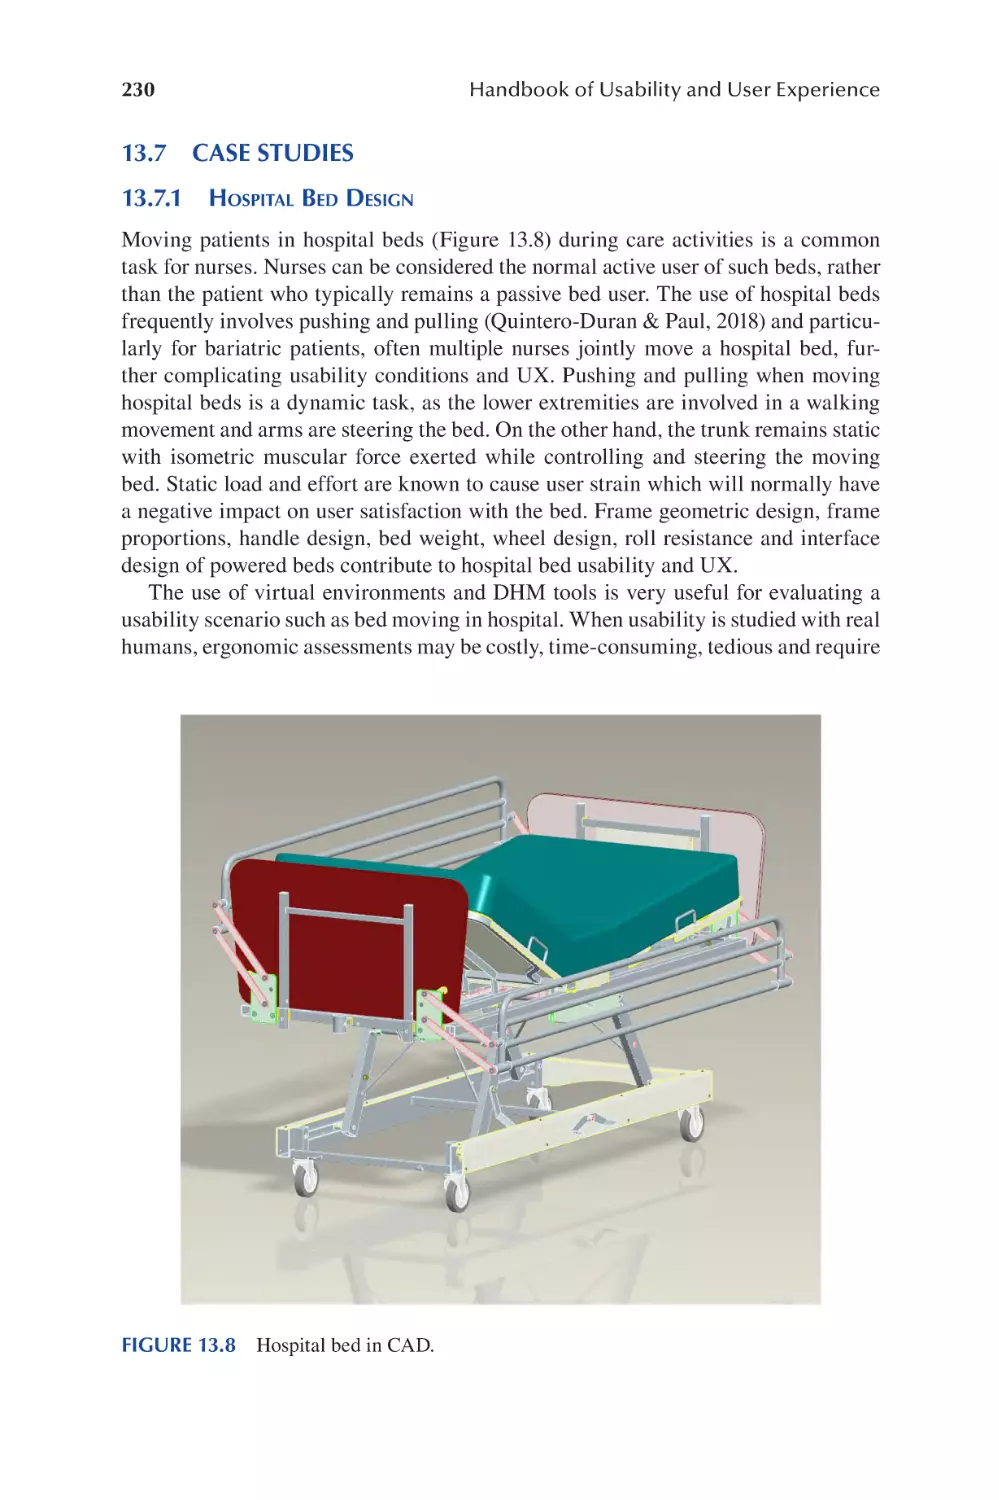 13.7 Case Studies
13.7.1 Hospital Bed Design